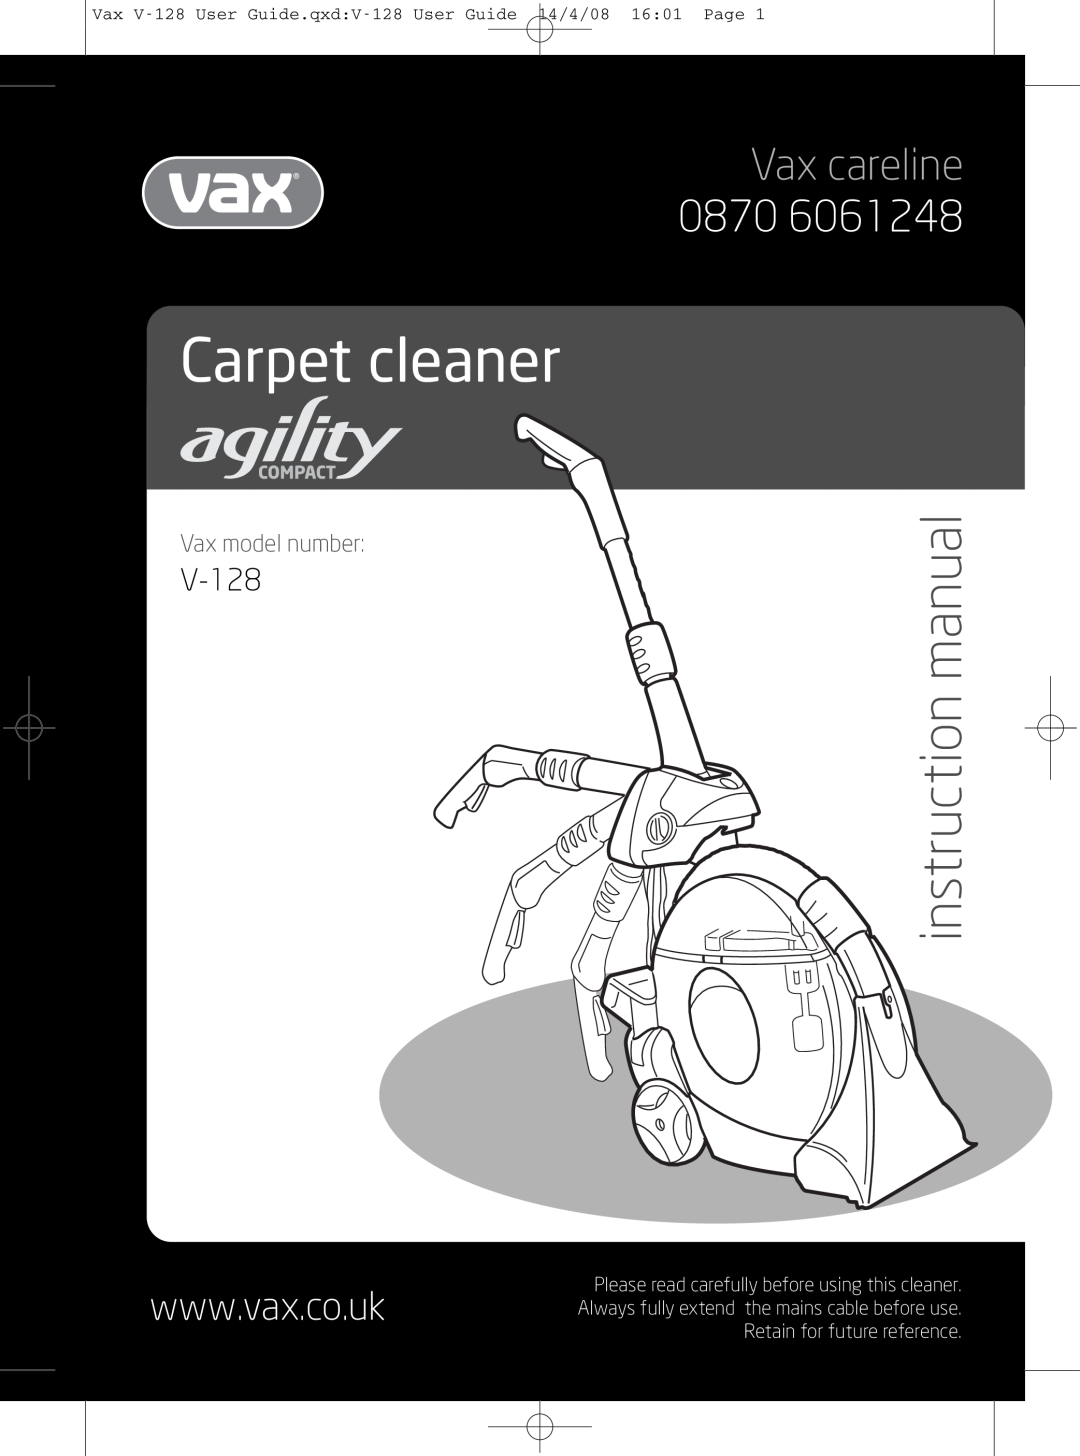 Vizio V-128 instruction manual Carpet cleaner, Vax careline, Vax model number 